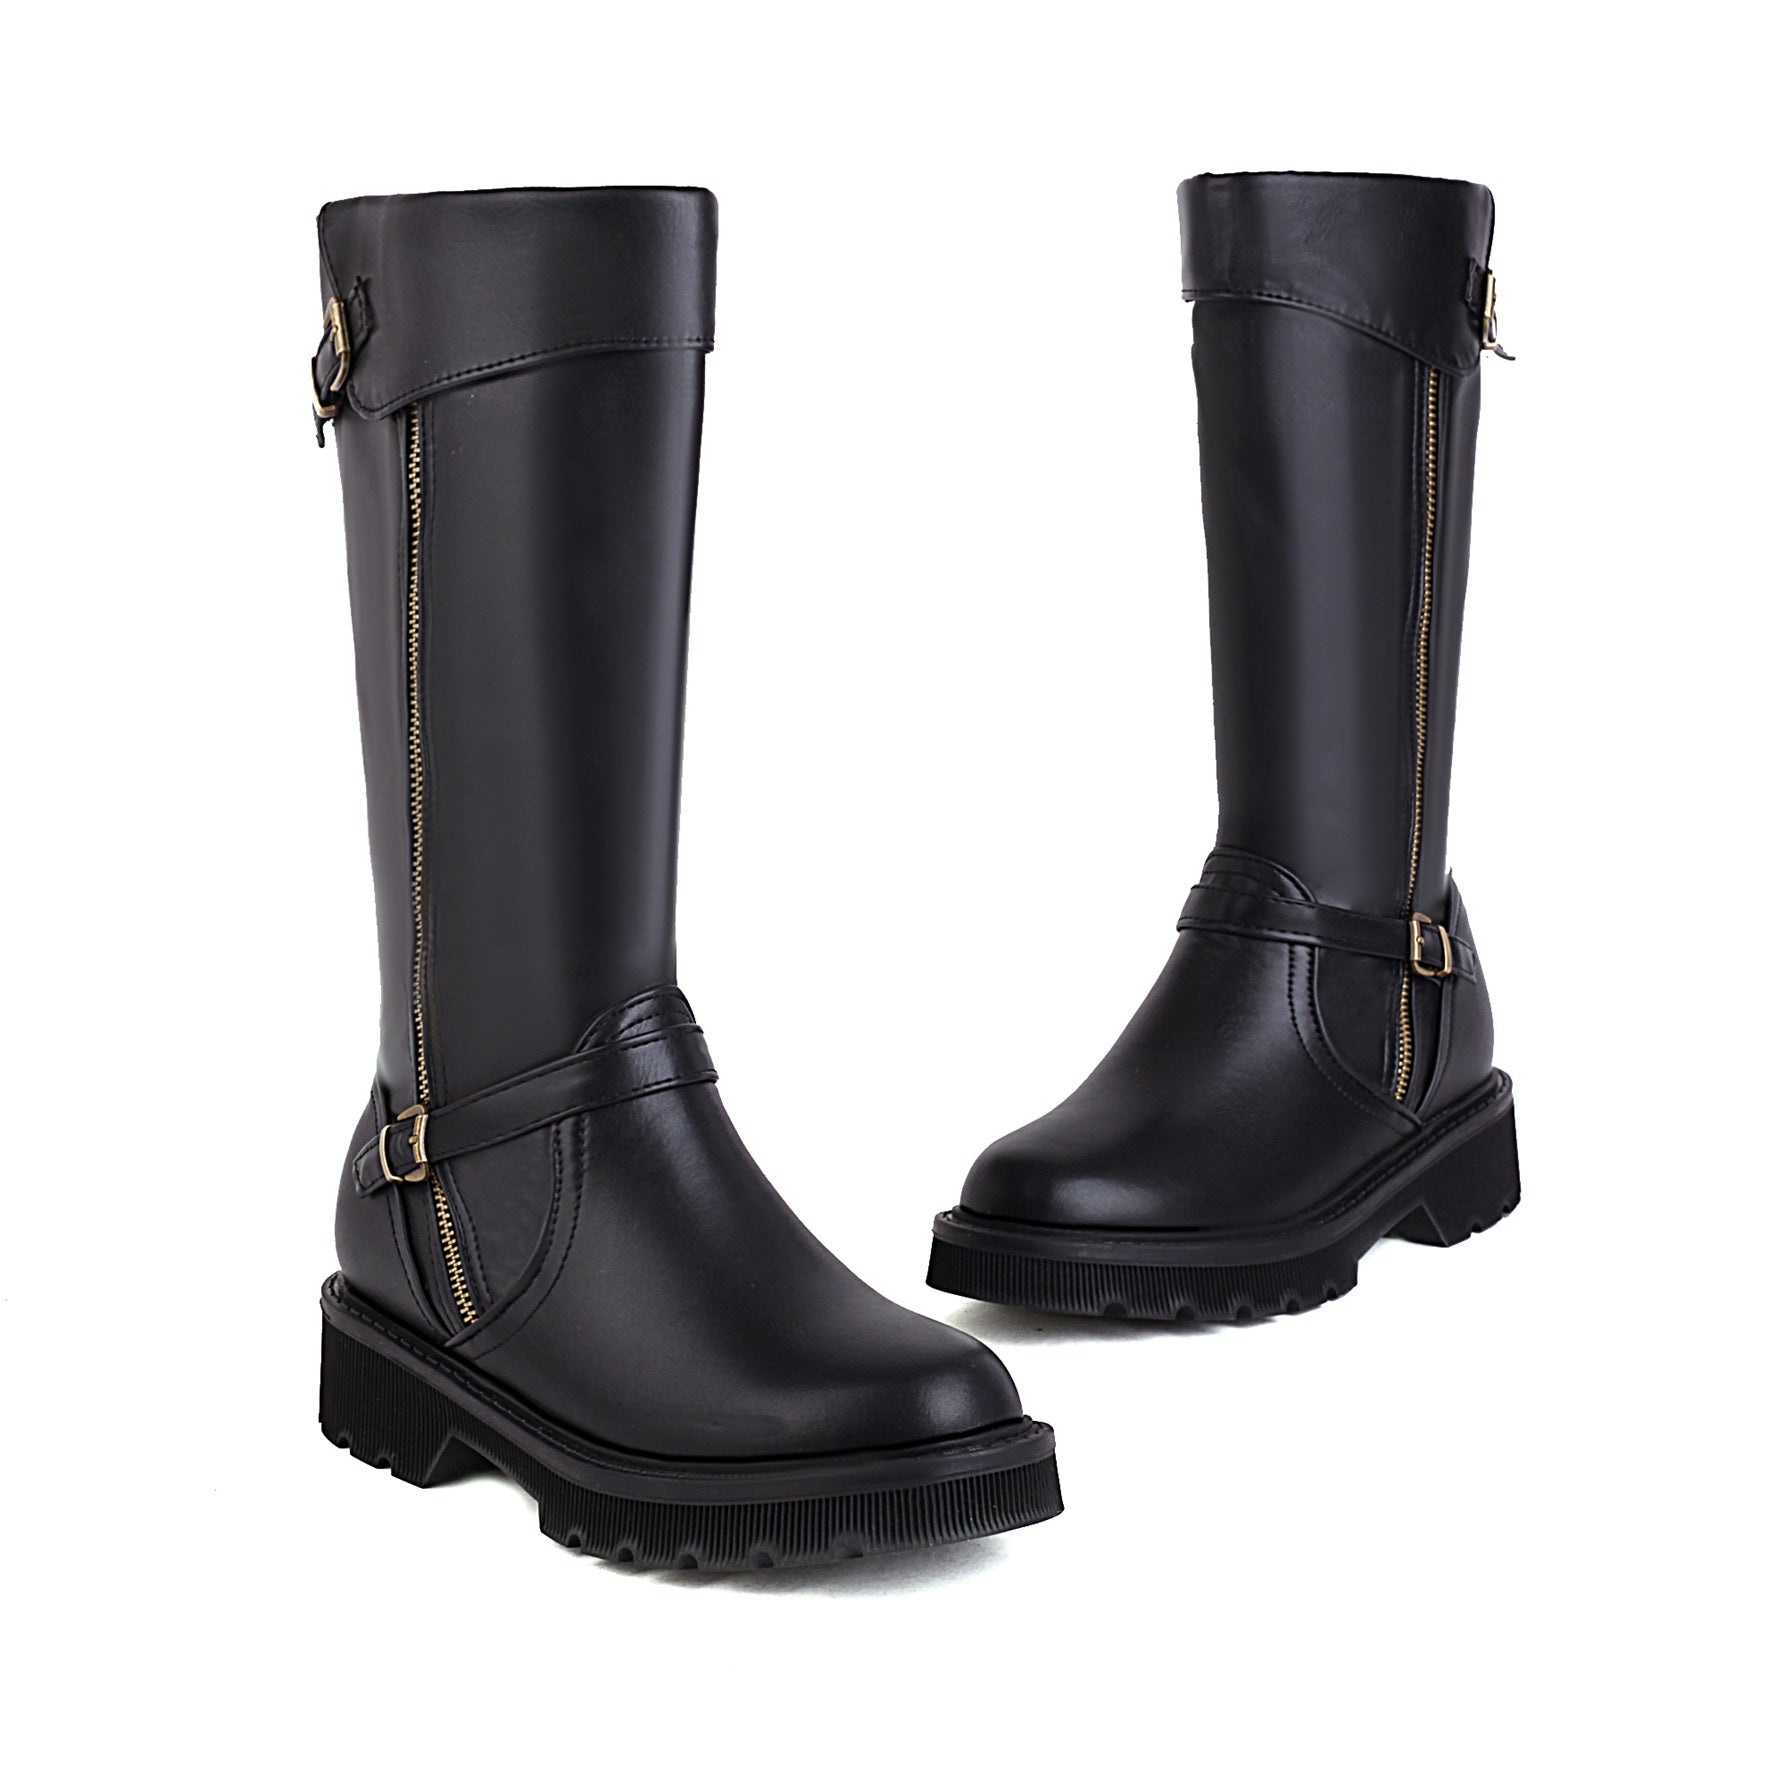 Bigsizeheels Vintage round toe leather boots - Black freeshipping - bigsizeheel®-size5-size15 -All Plus Sizes Available!